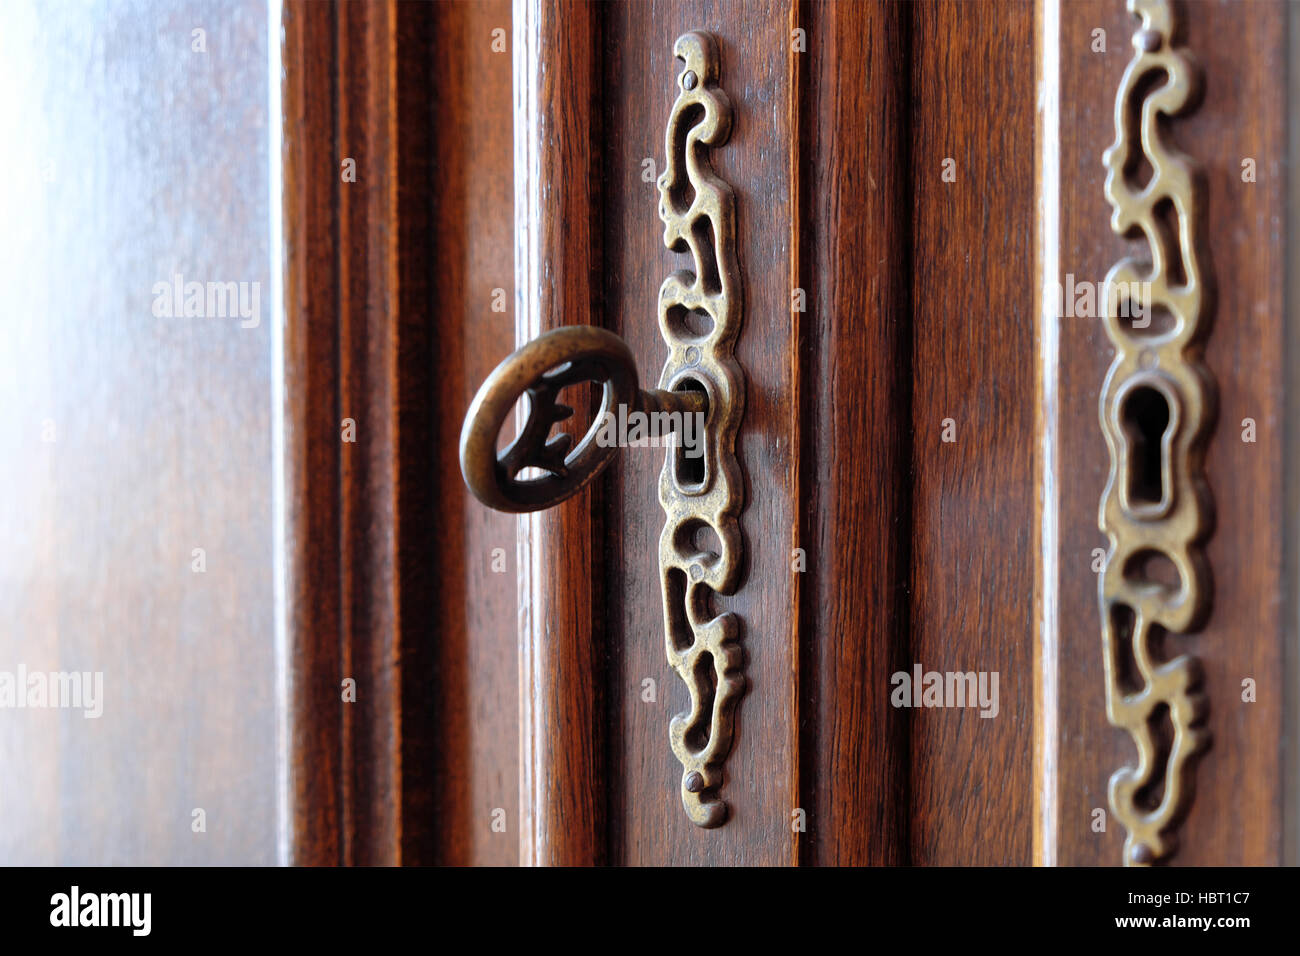 vintage key in beautiful wooden door / furniture Stock Photo